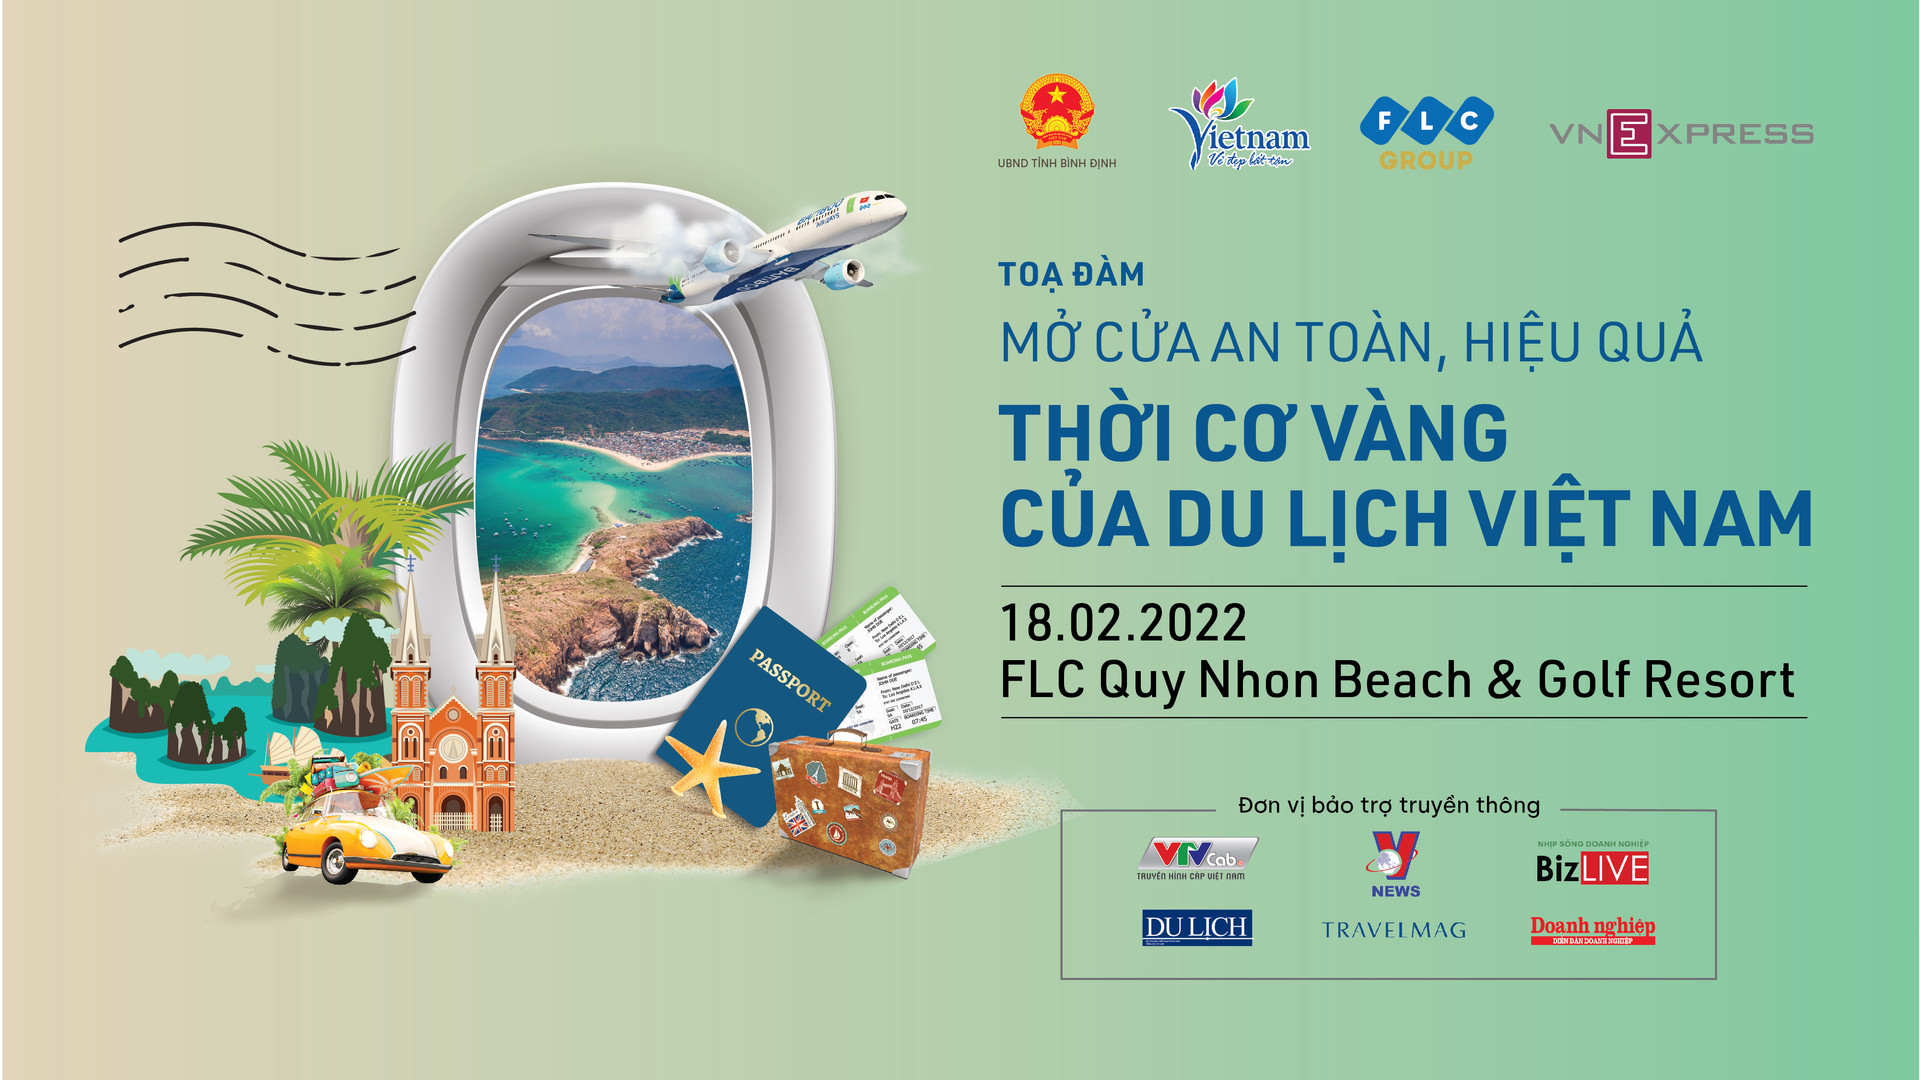 Tọa đàm ‘Mở cửa an toàn, hiệu quả: Thời cơ vàng của du lịch Việt Nam’ diễn ra chiều ngày 18/2 tại FLC Quy Nhơn, Bình Định.